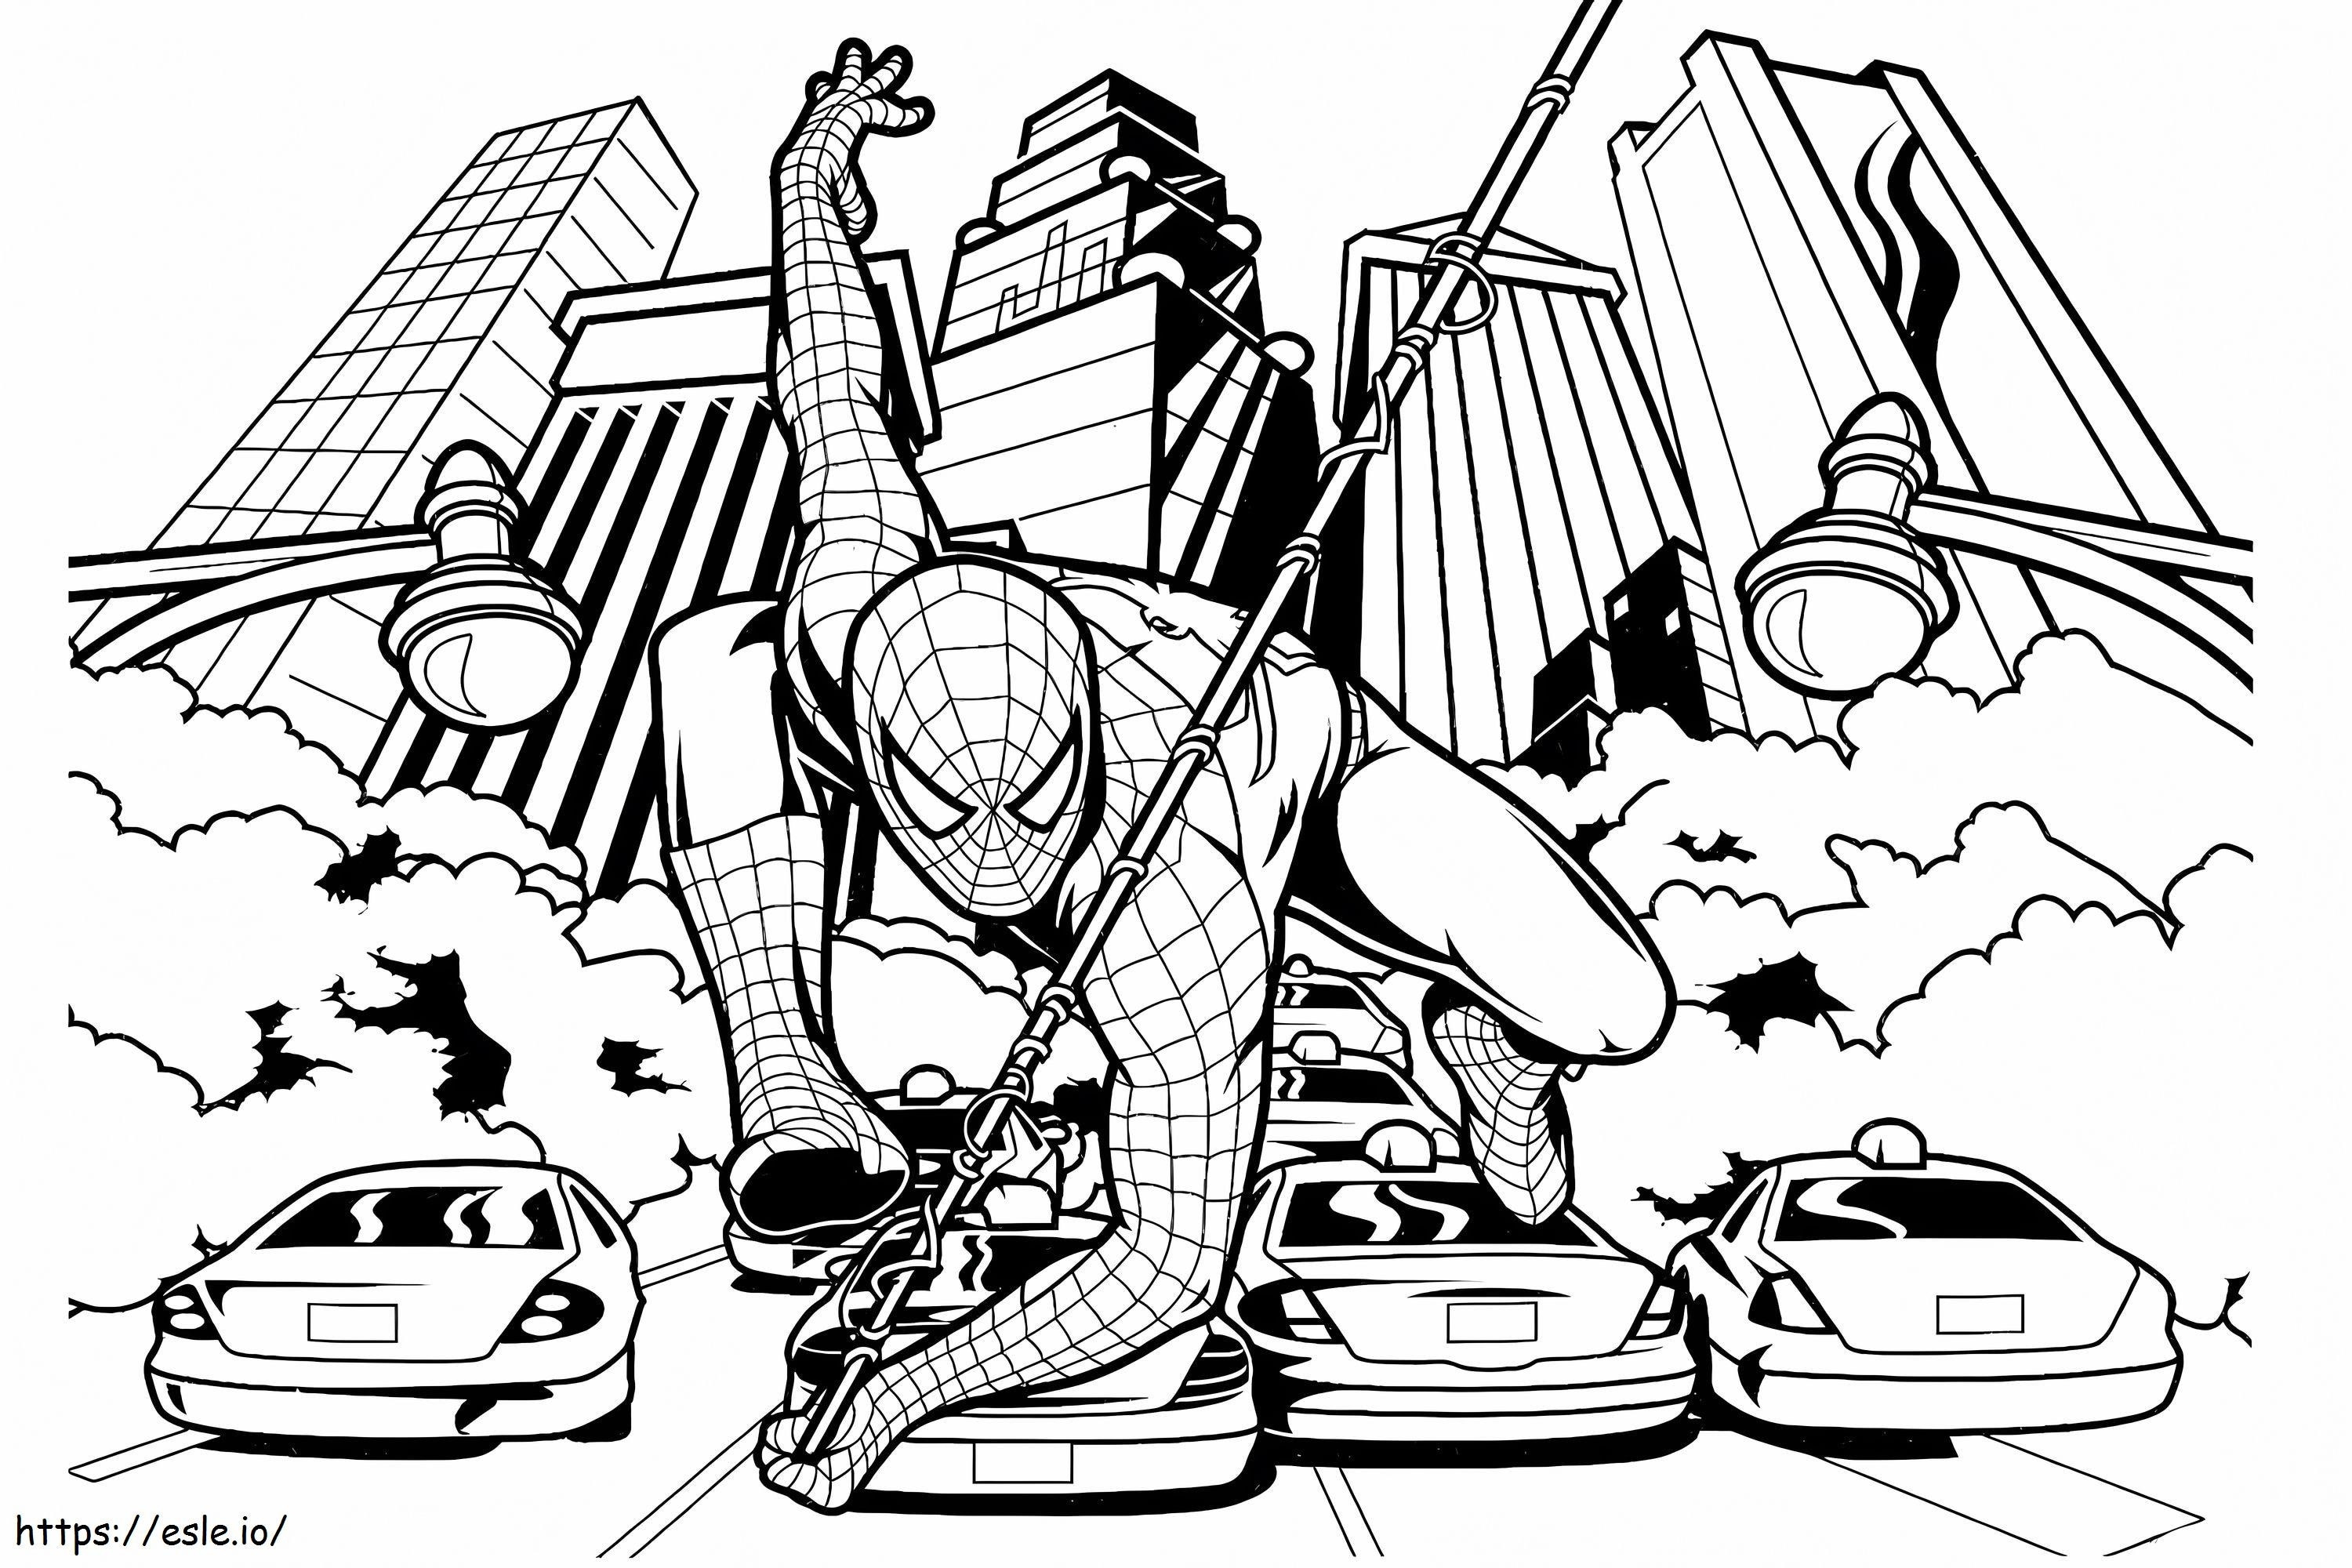 Incrível Homem-Aranha na cidade para colorir